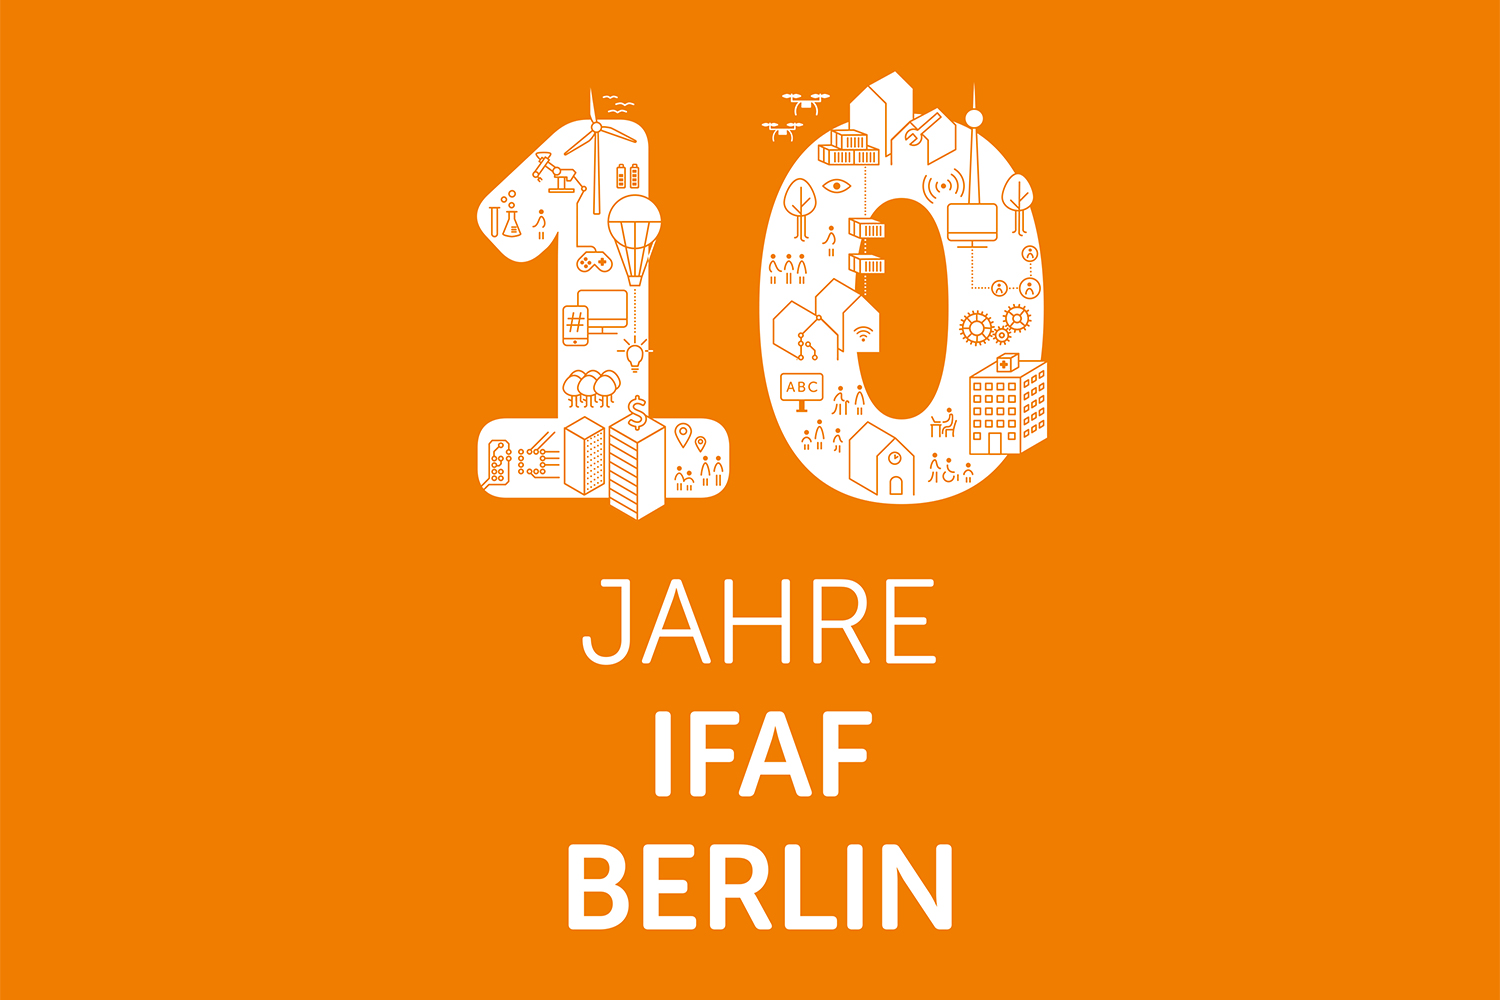 10 Jahre IFAF